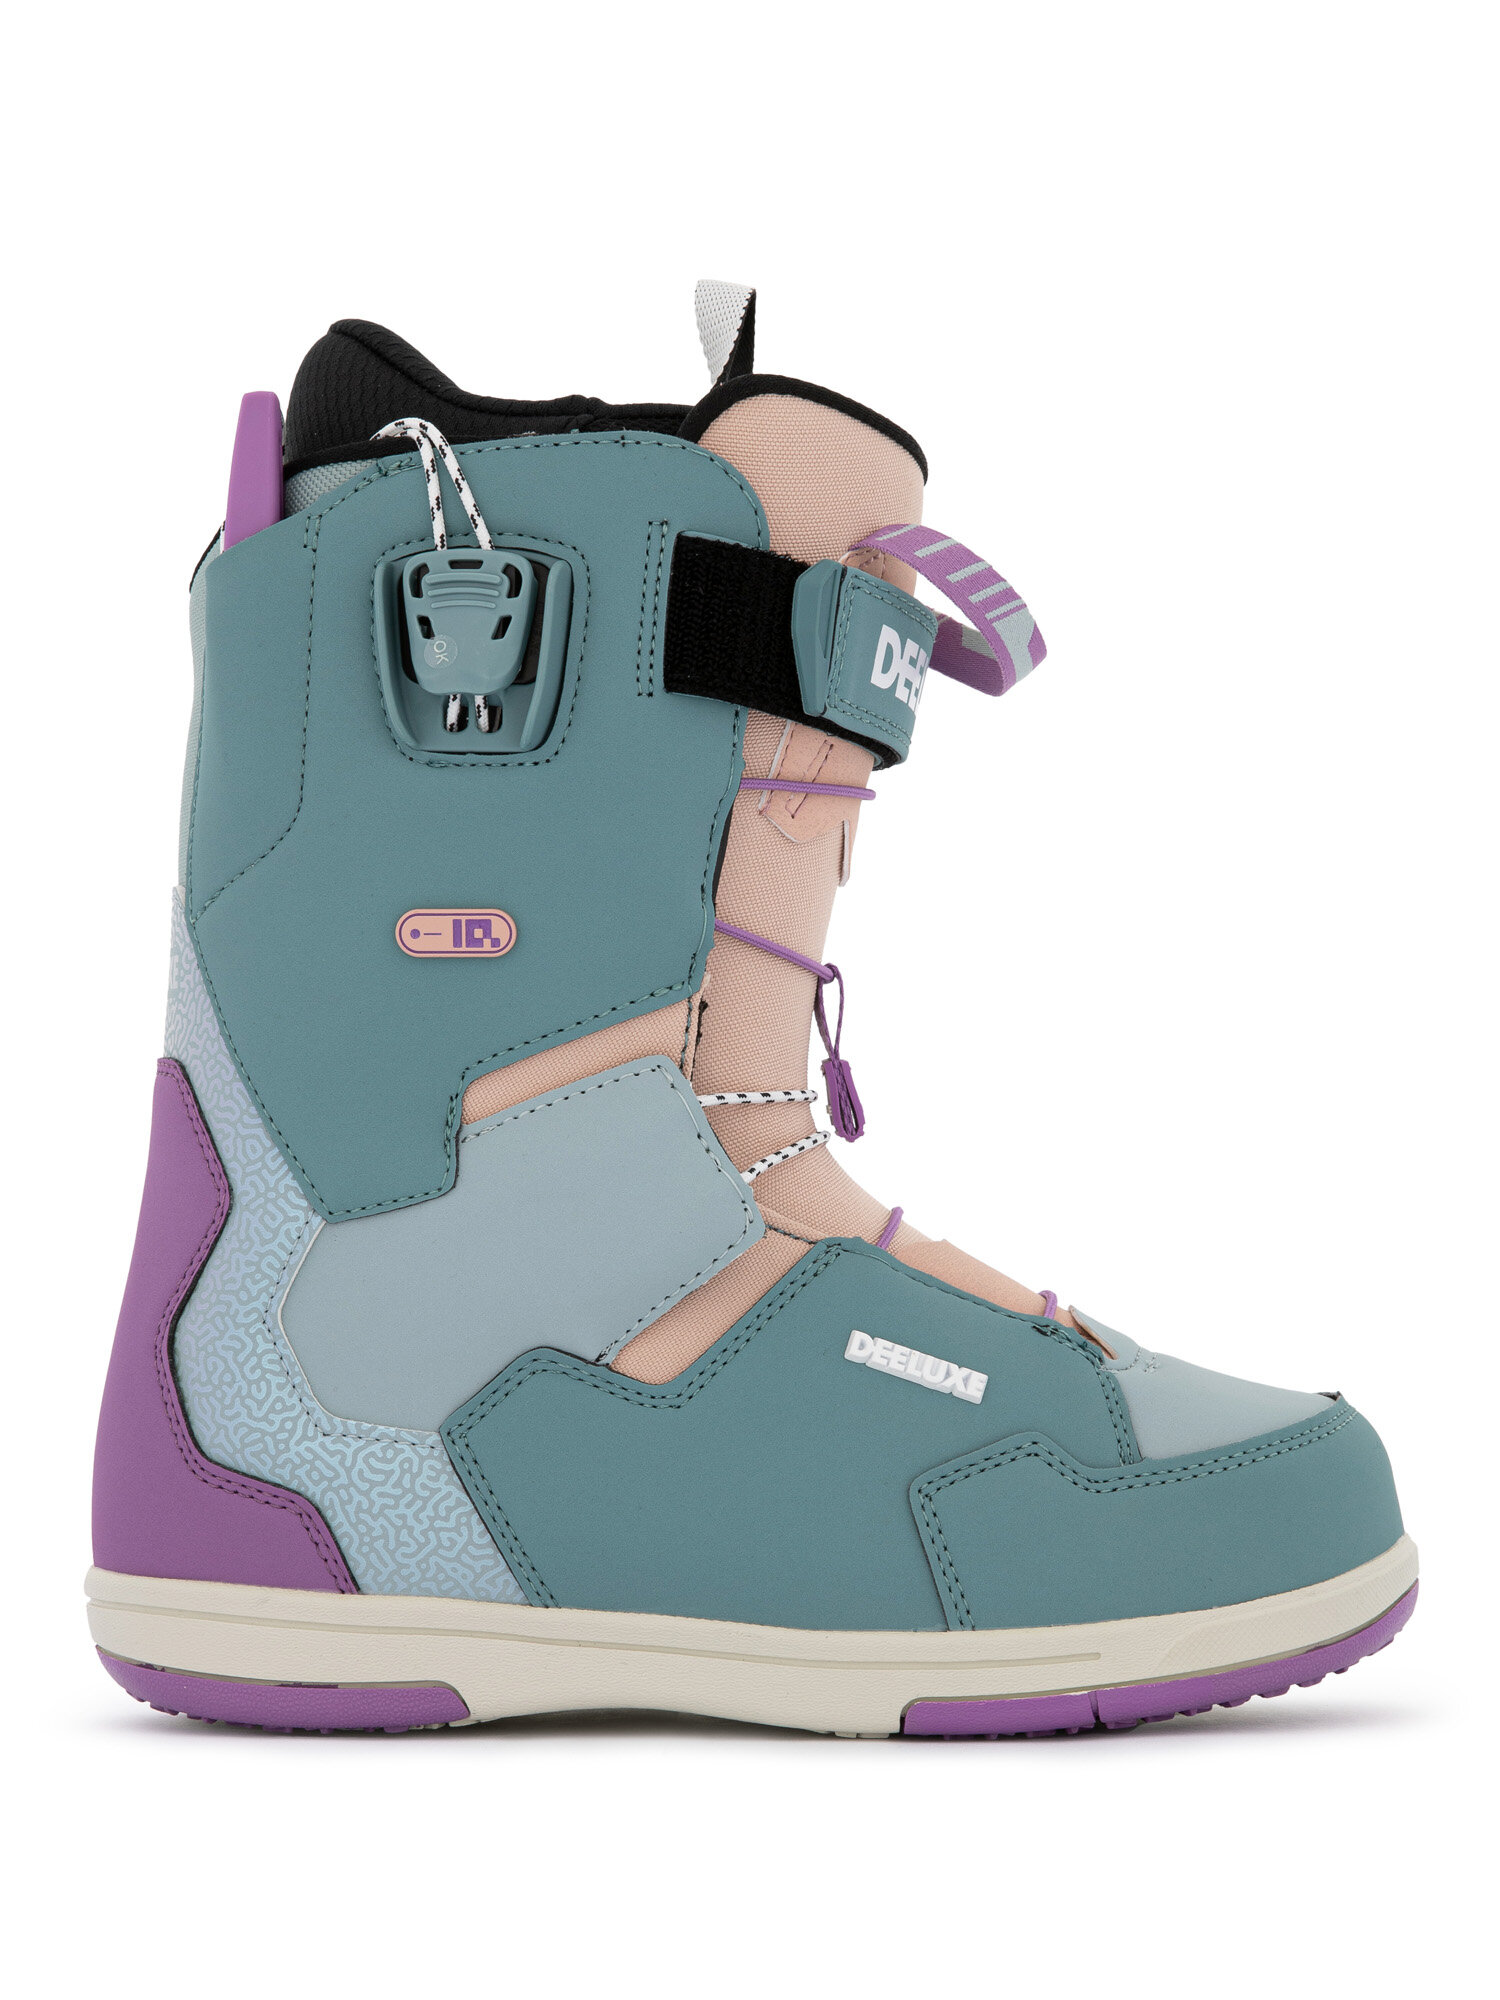 Ботинки для сноуборда DEELUXE Team Id Lara Candy (см:24)